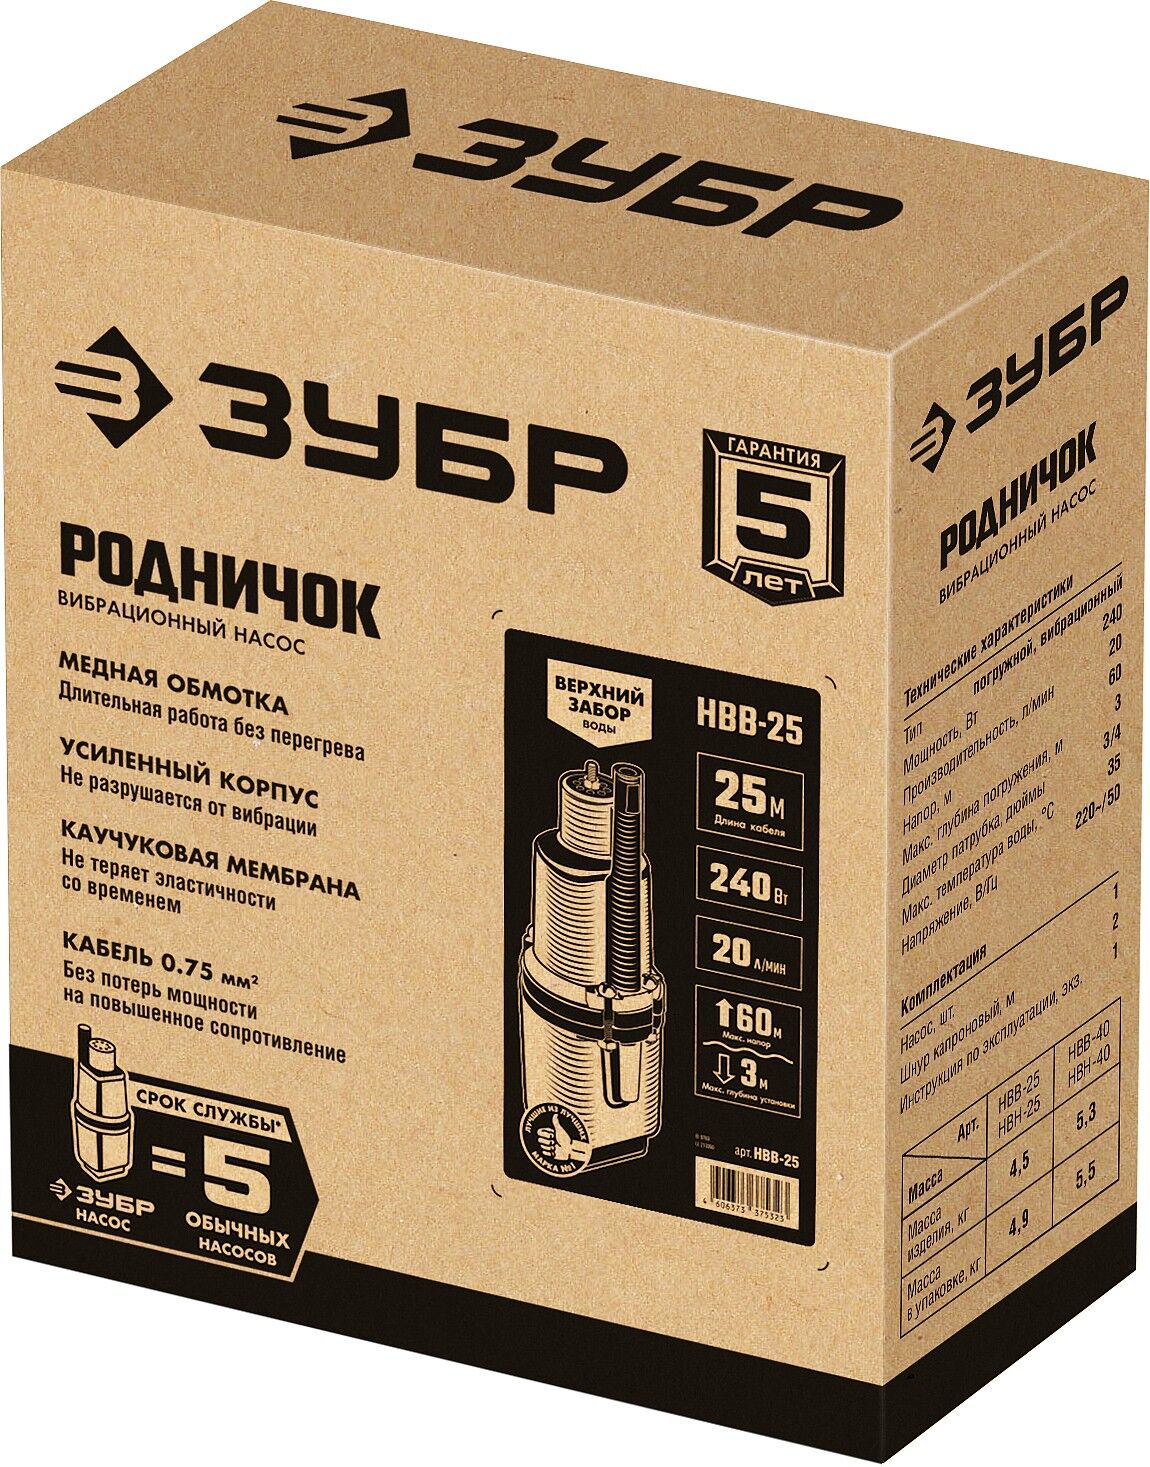 ЗУБР Родничок-В, 25 м, вибрационный насос с верхним забором (НВВ-25) Зубр